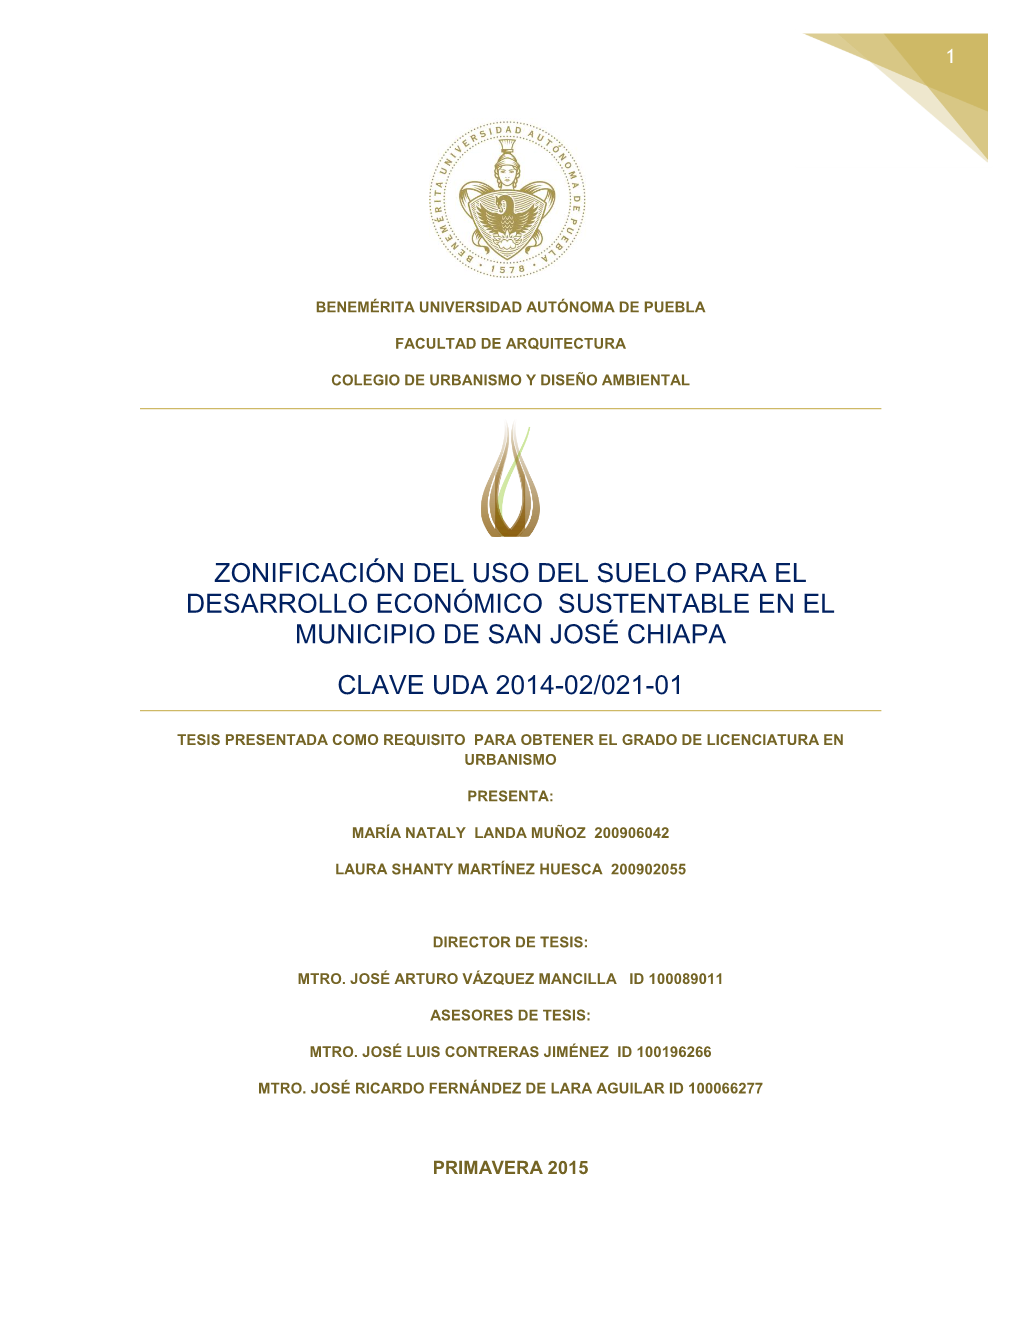 Zonificación Del Uso Del Suelo Para El Desarrollo Económico Sustentable En El Municipio De San José Chiapa Clave Uda 2014-02/021-01